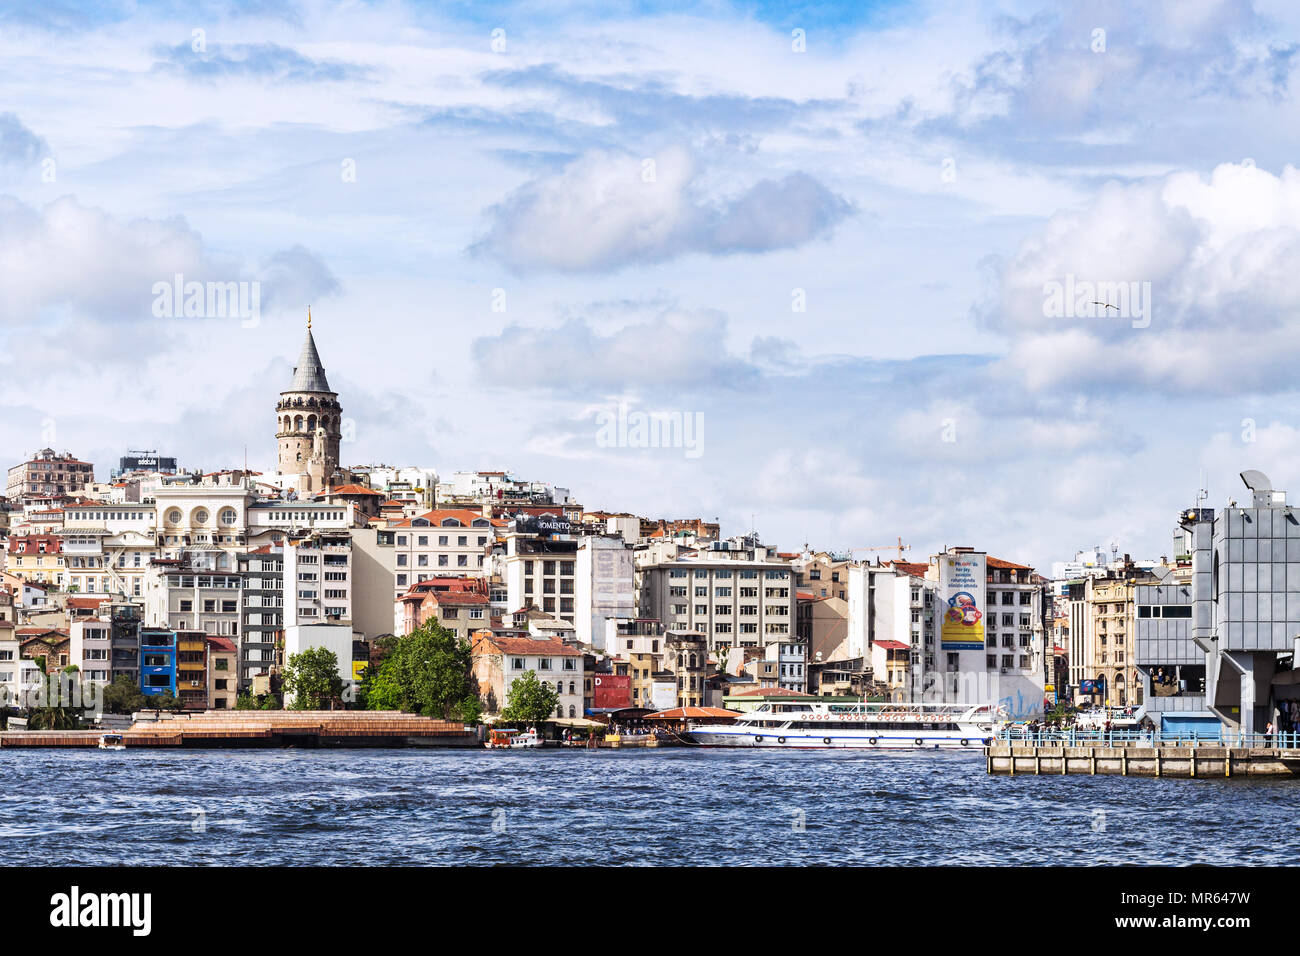 ISTANBUL, Türkei - 11. MAI 2018: die Ufer des Goldenen Horns Bucht in Galata (karaköy) Bezirk. Karakoy ist ein kommerzielles Viertel im Stadtteil Beyoglu l Stockfoto